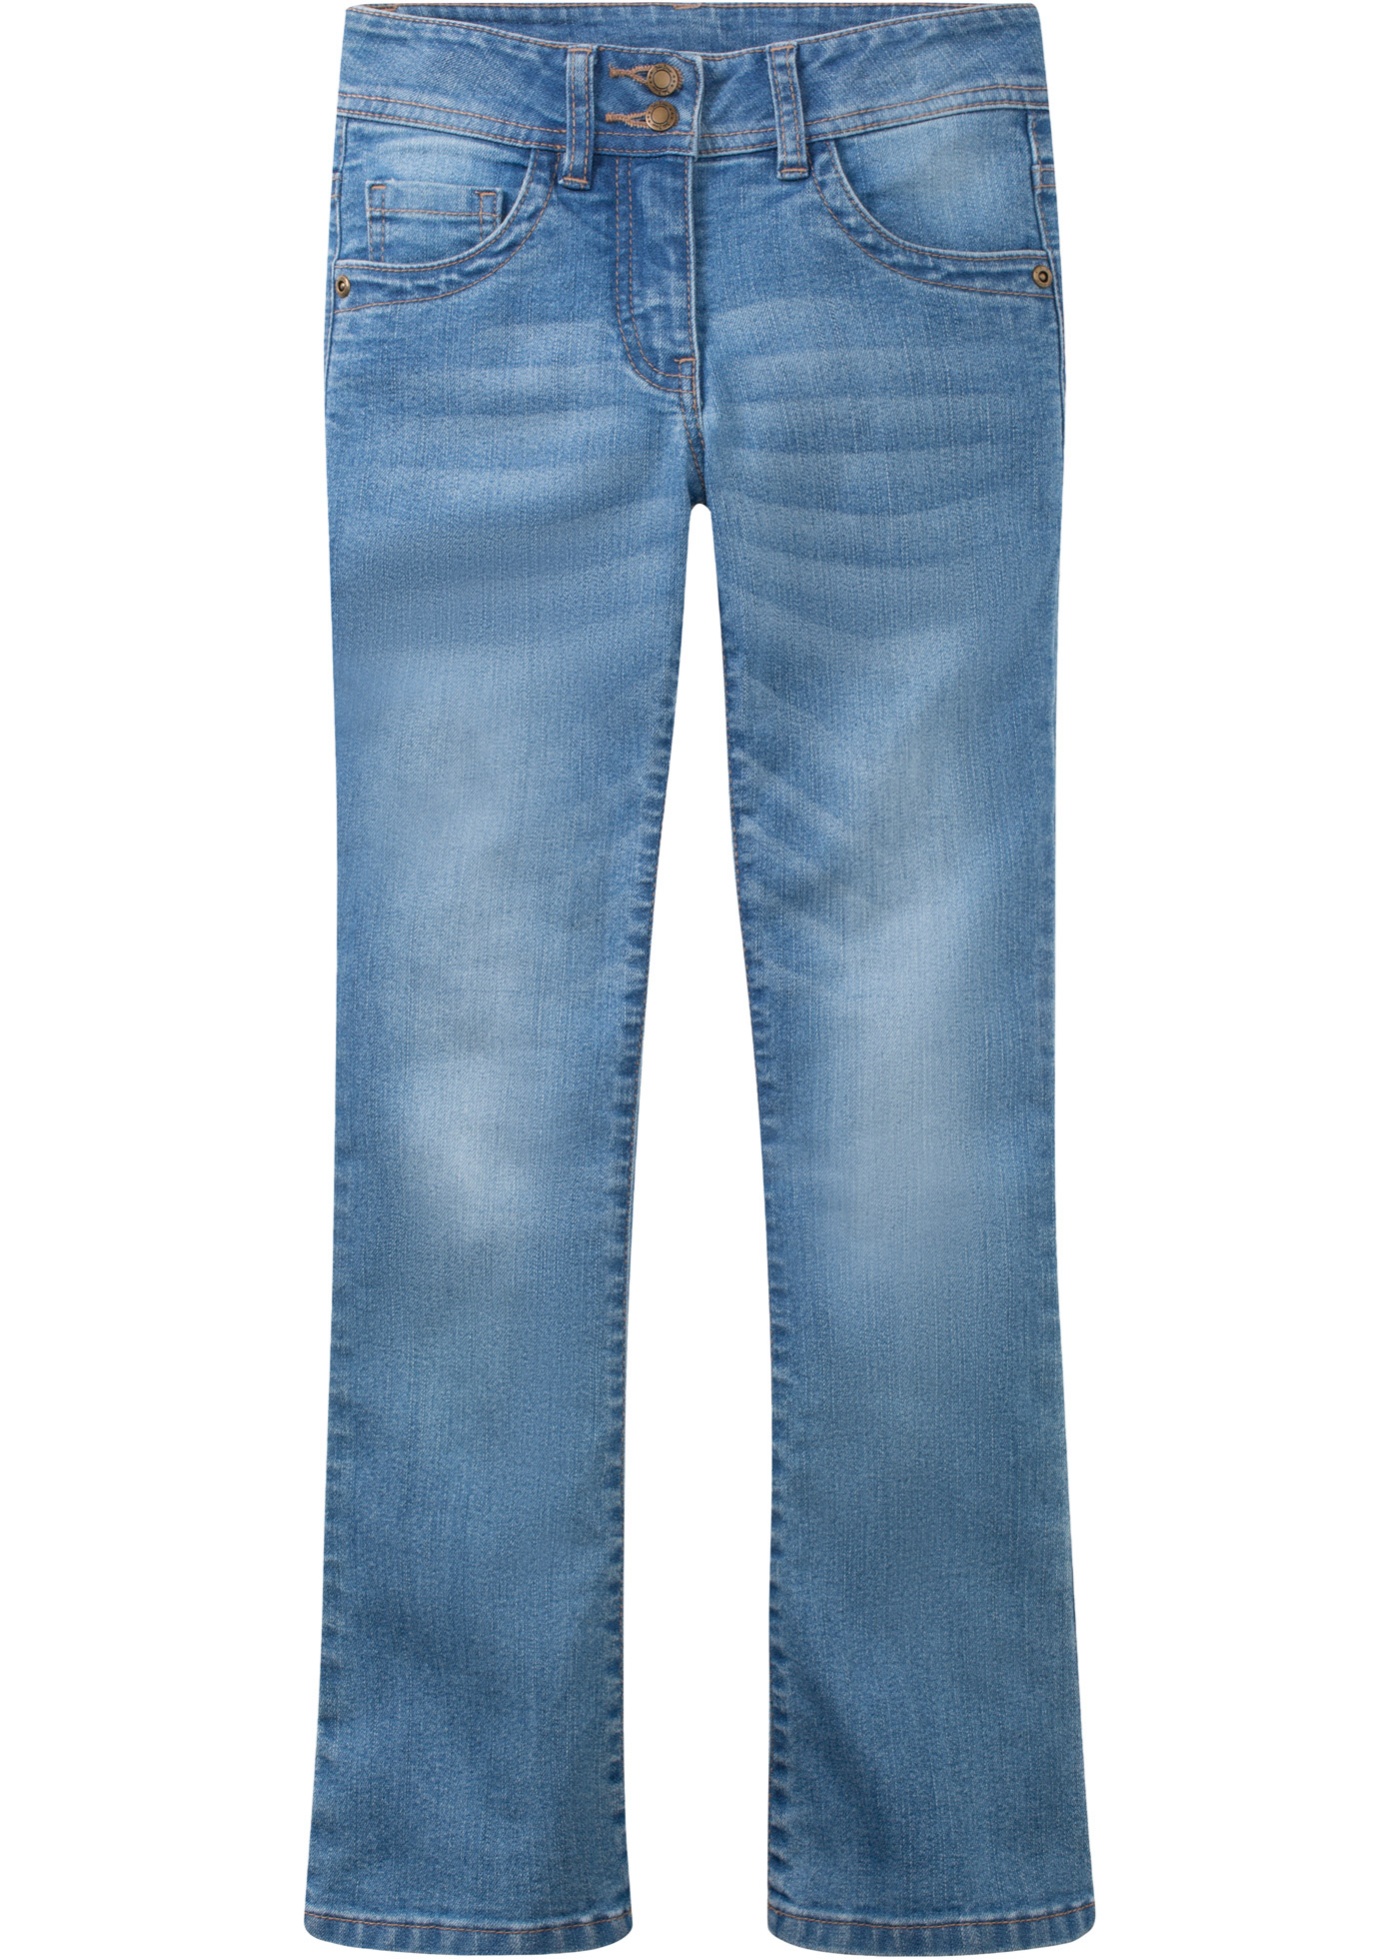 Mädchen Bootcut Stretch-Jeans von bonprix